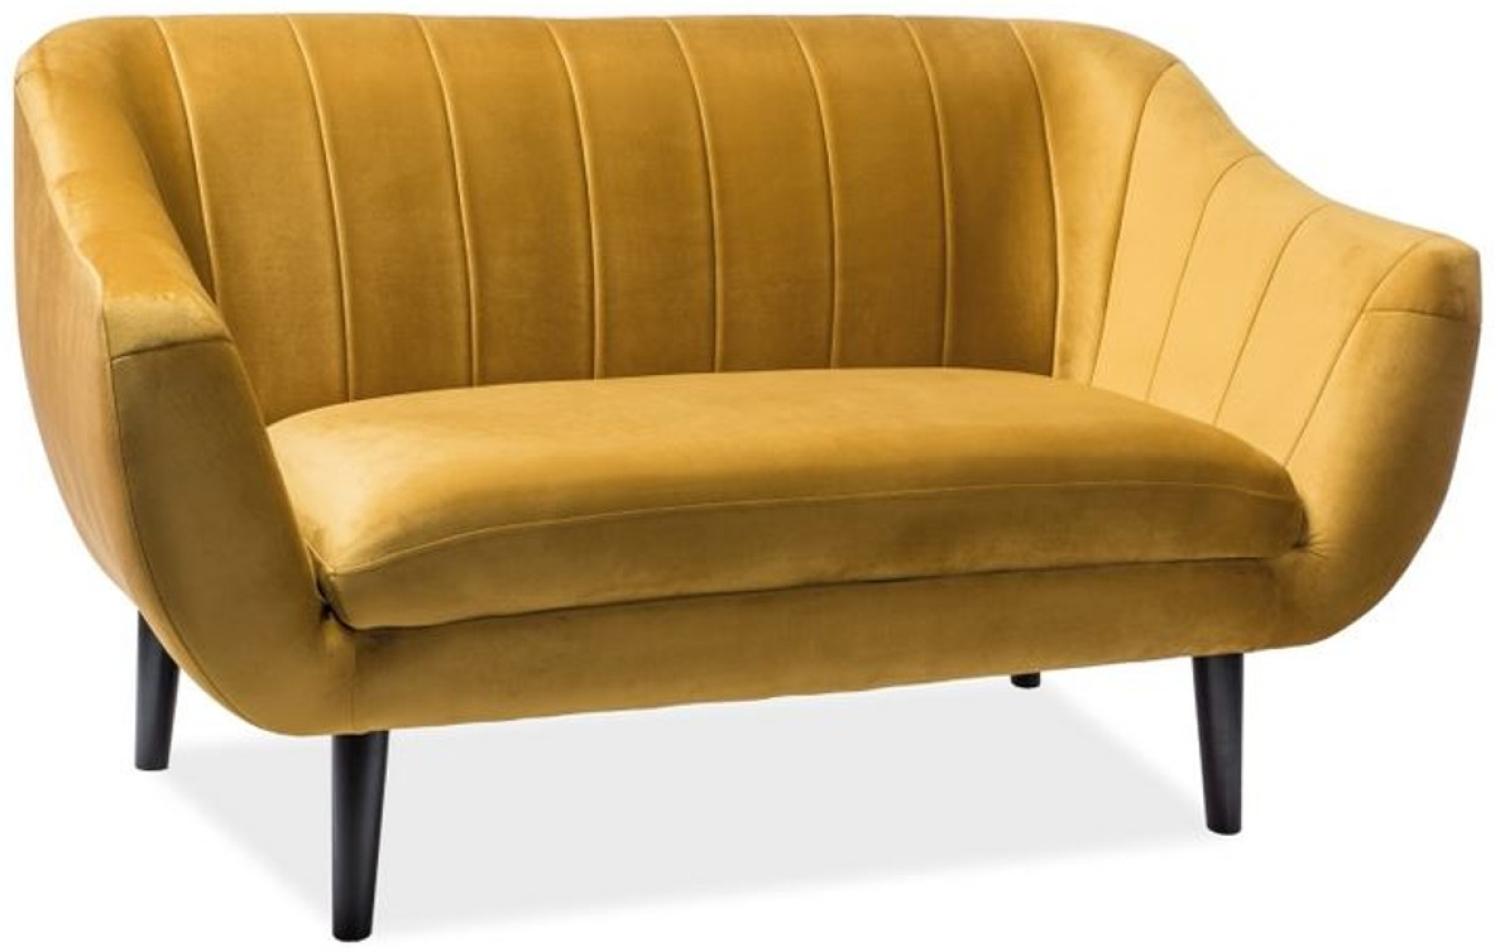 Casa Padrino Luxus Samt Sofa 153 x 85 x H. 83 cm - Verschiedene Farben - Wohnzimmer Sofa - Couch mit edlem Samtsoff - Wohnzimmermöbel Bild 1